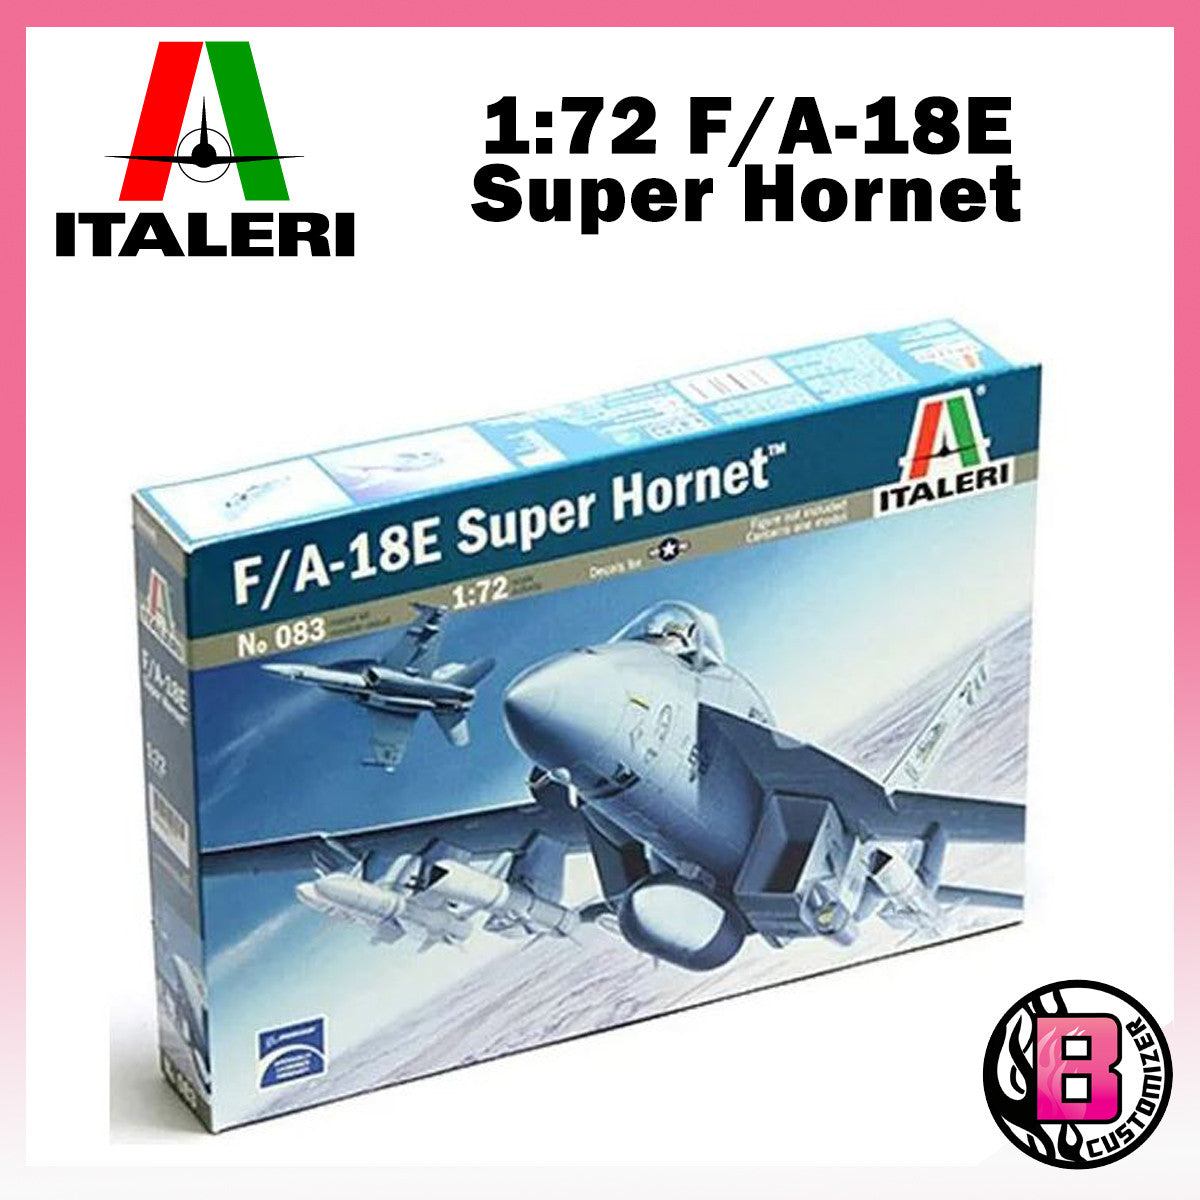 Italeri 1/72 F/A-18E Super Hornet (No 083)